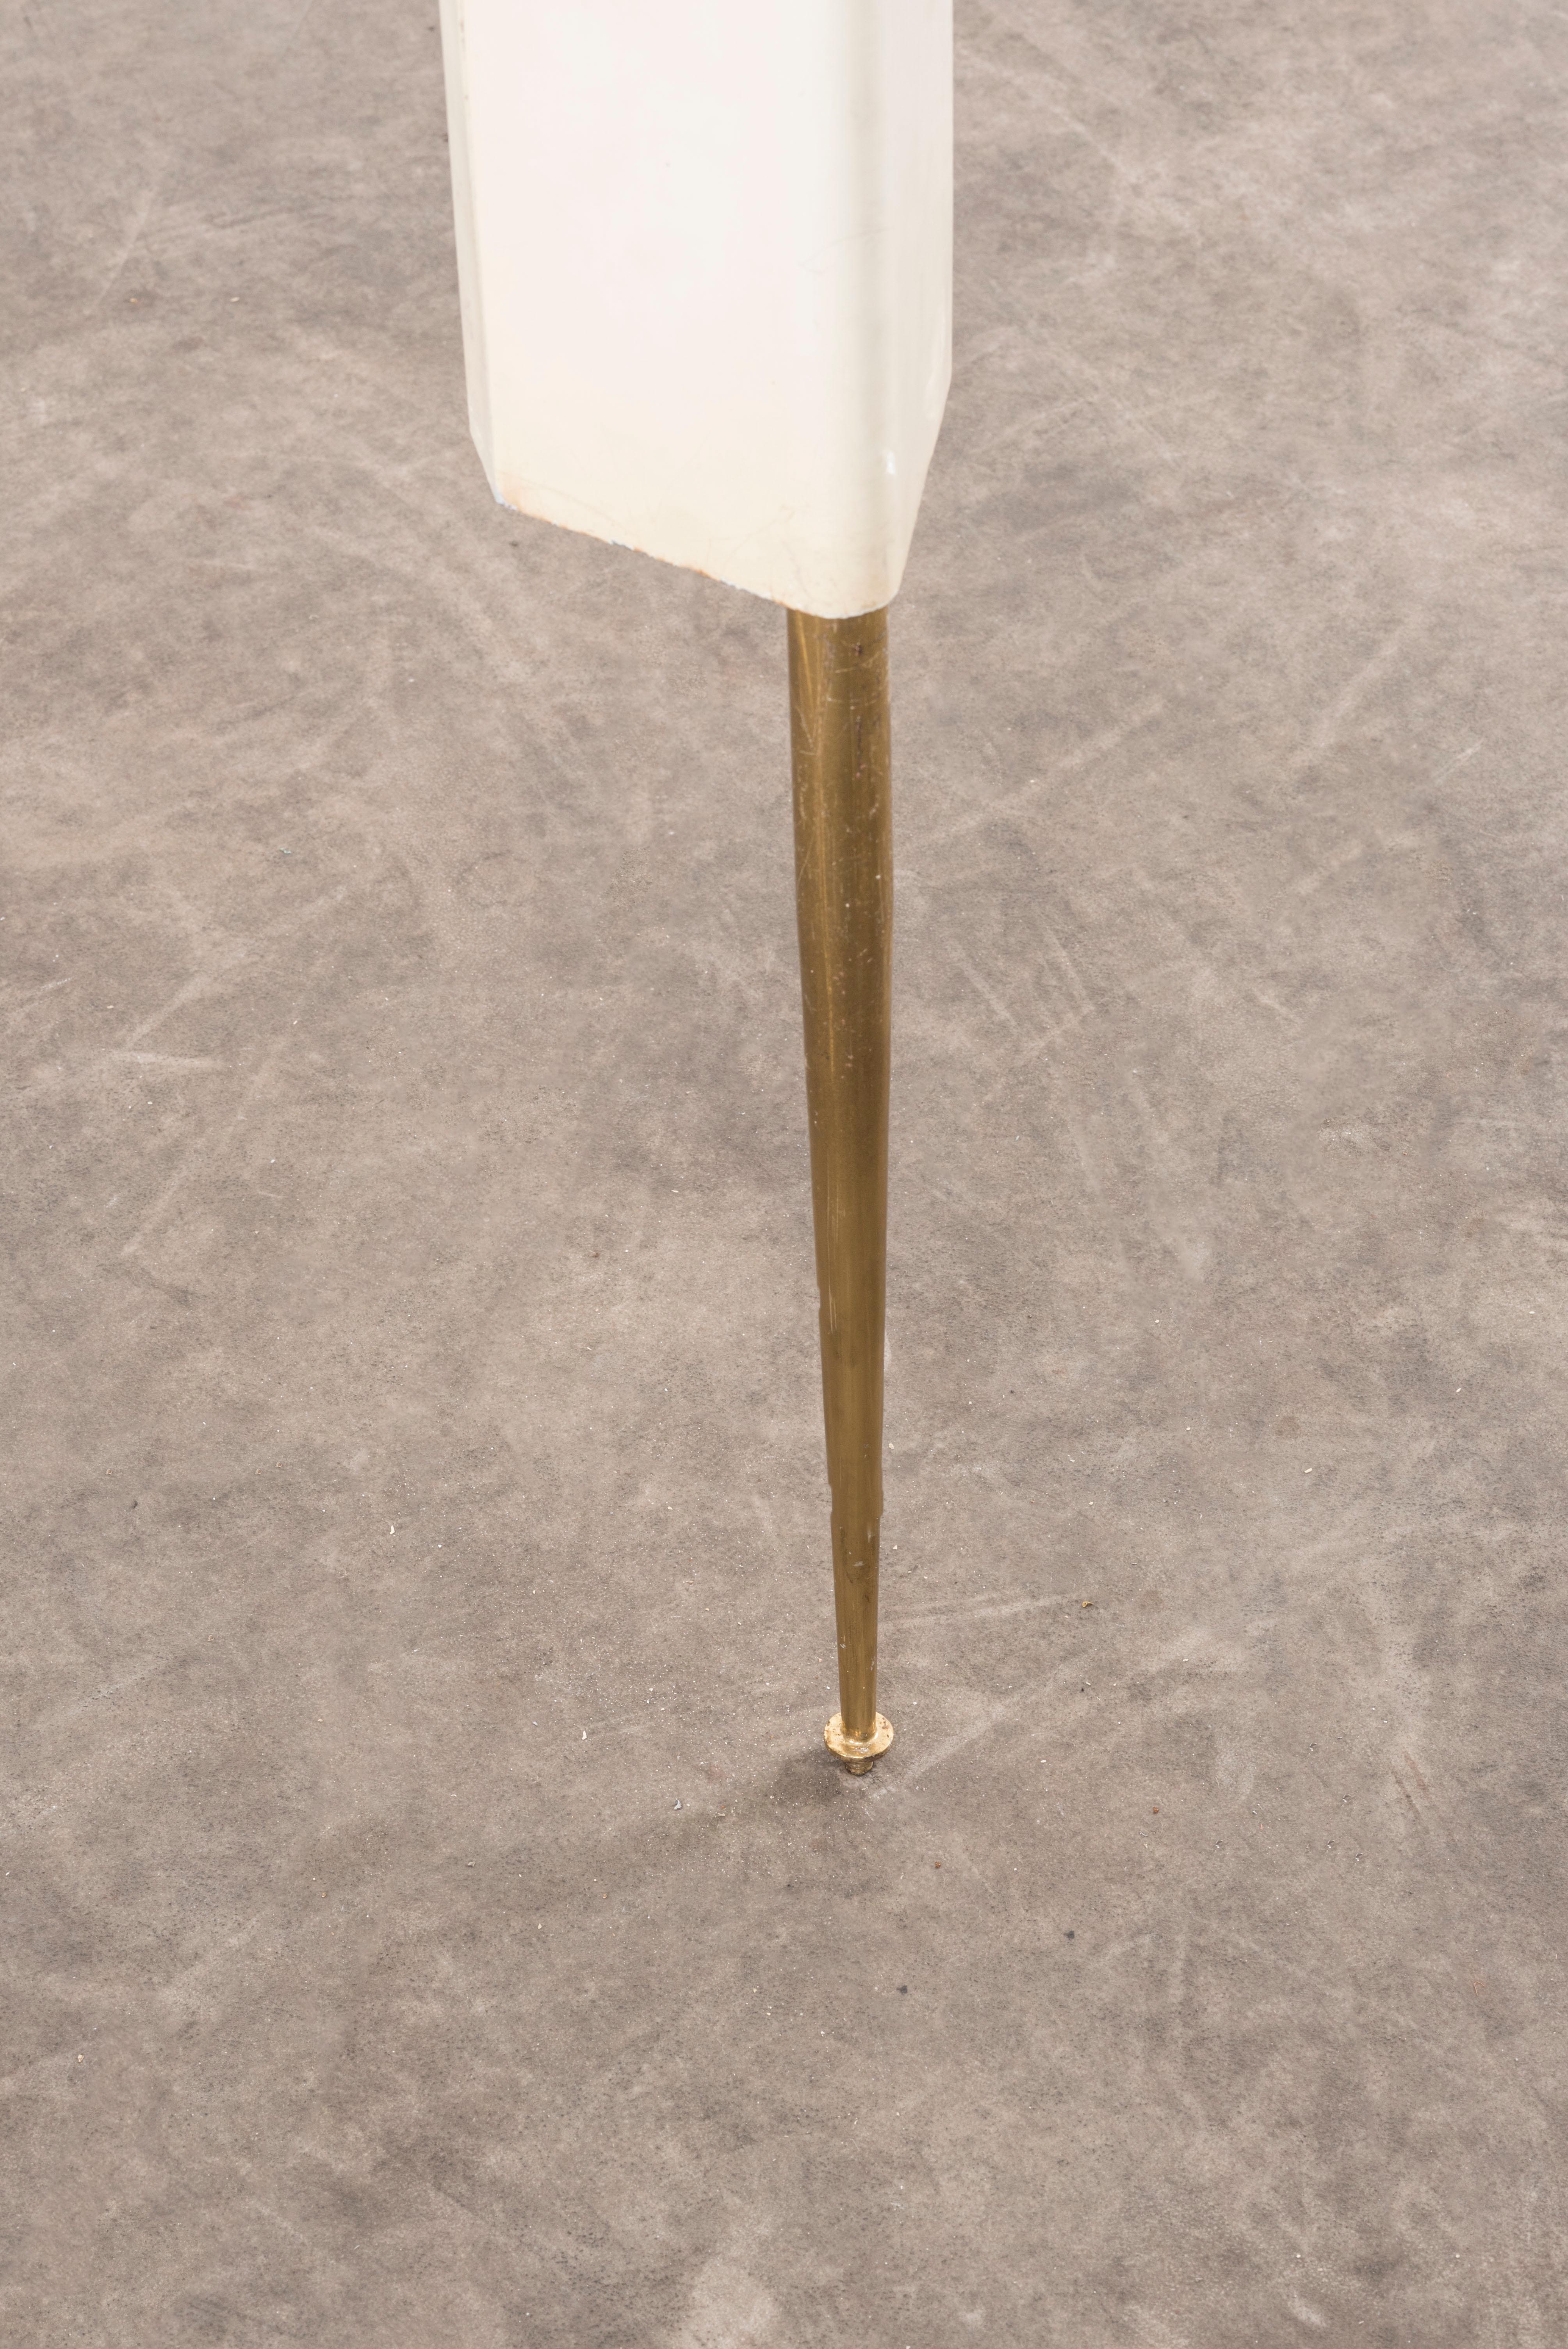 L78 Stehleuchte von Osvaldo Borsani,
Italien, 1950er Jahre. Entworfen für die X. Ausgabe der Triennale di Milano. Lackiertes Metall, Neonröhren. Maße: 11 x 13 x H 215 cm. 4,3 x 5,1 x H 84,6 in.
Bitte beachten Sie: Die Preise enthalten keine